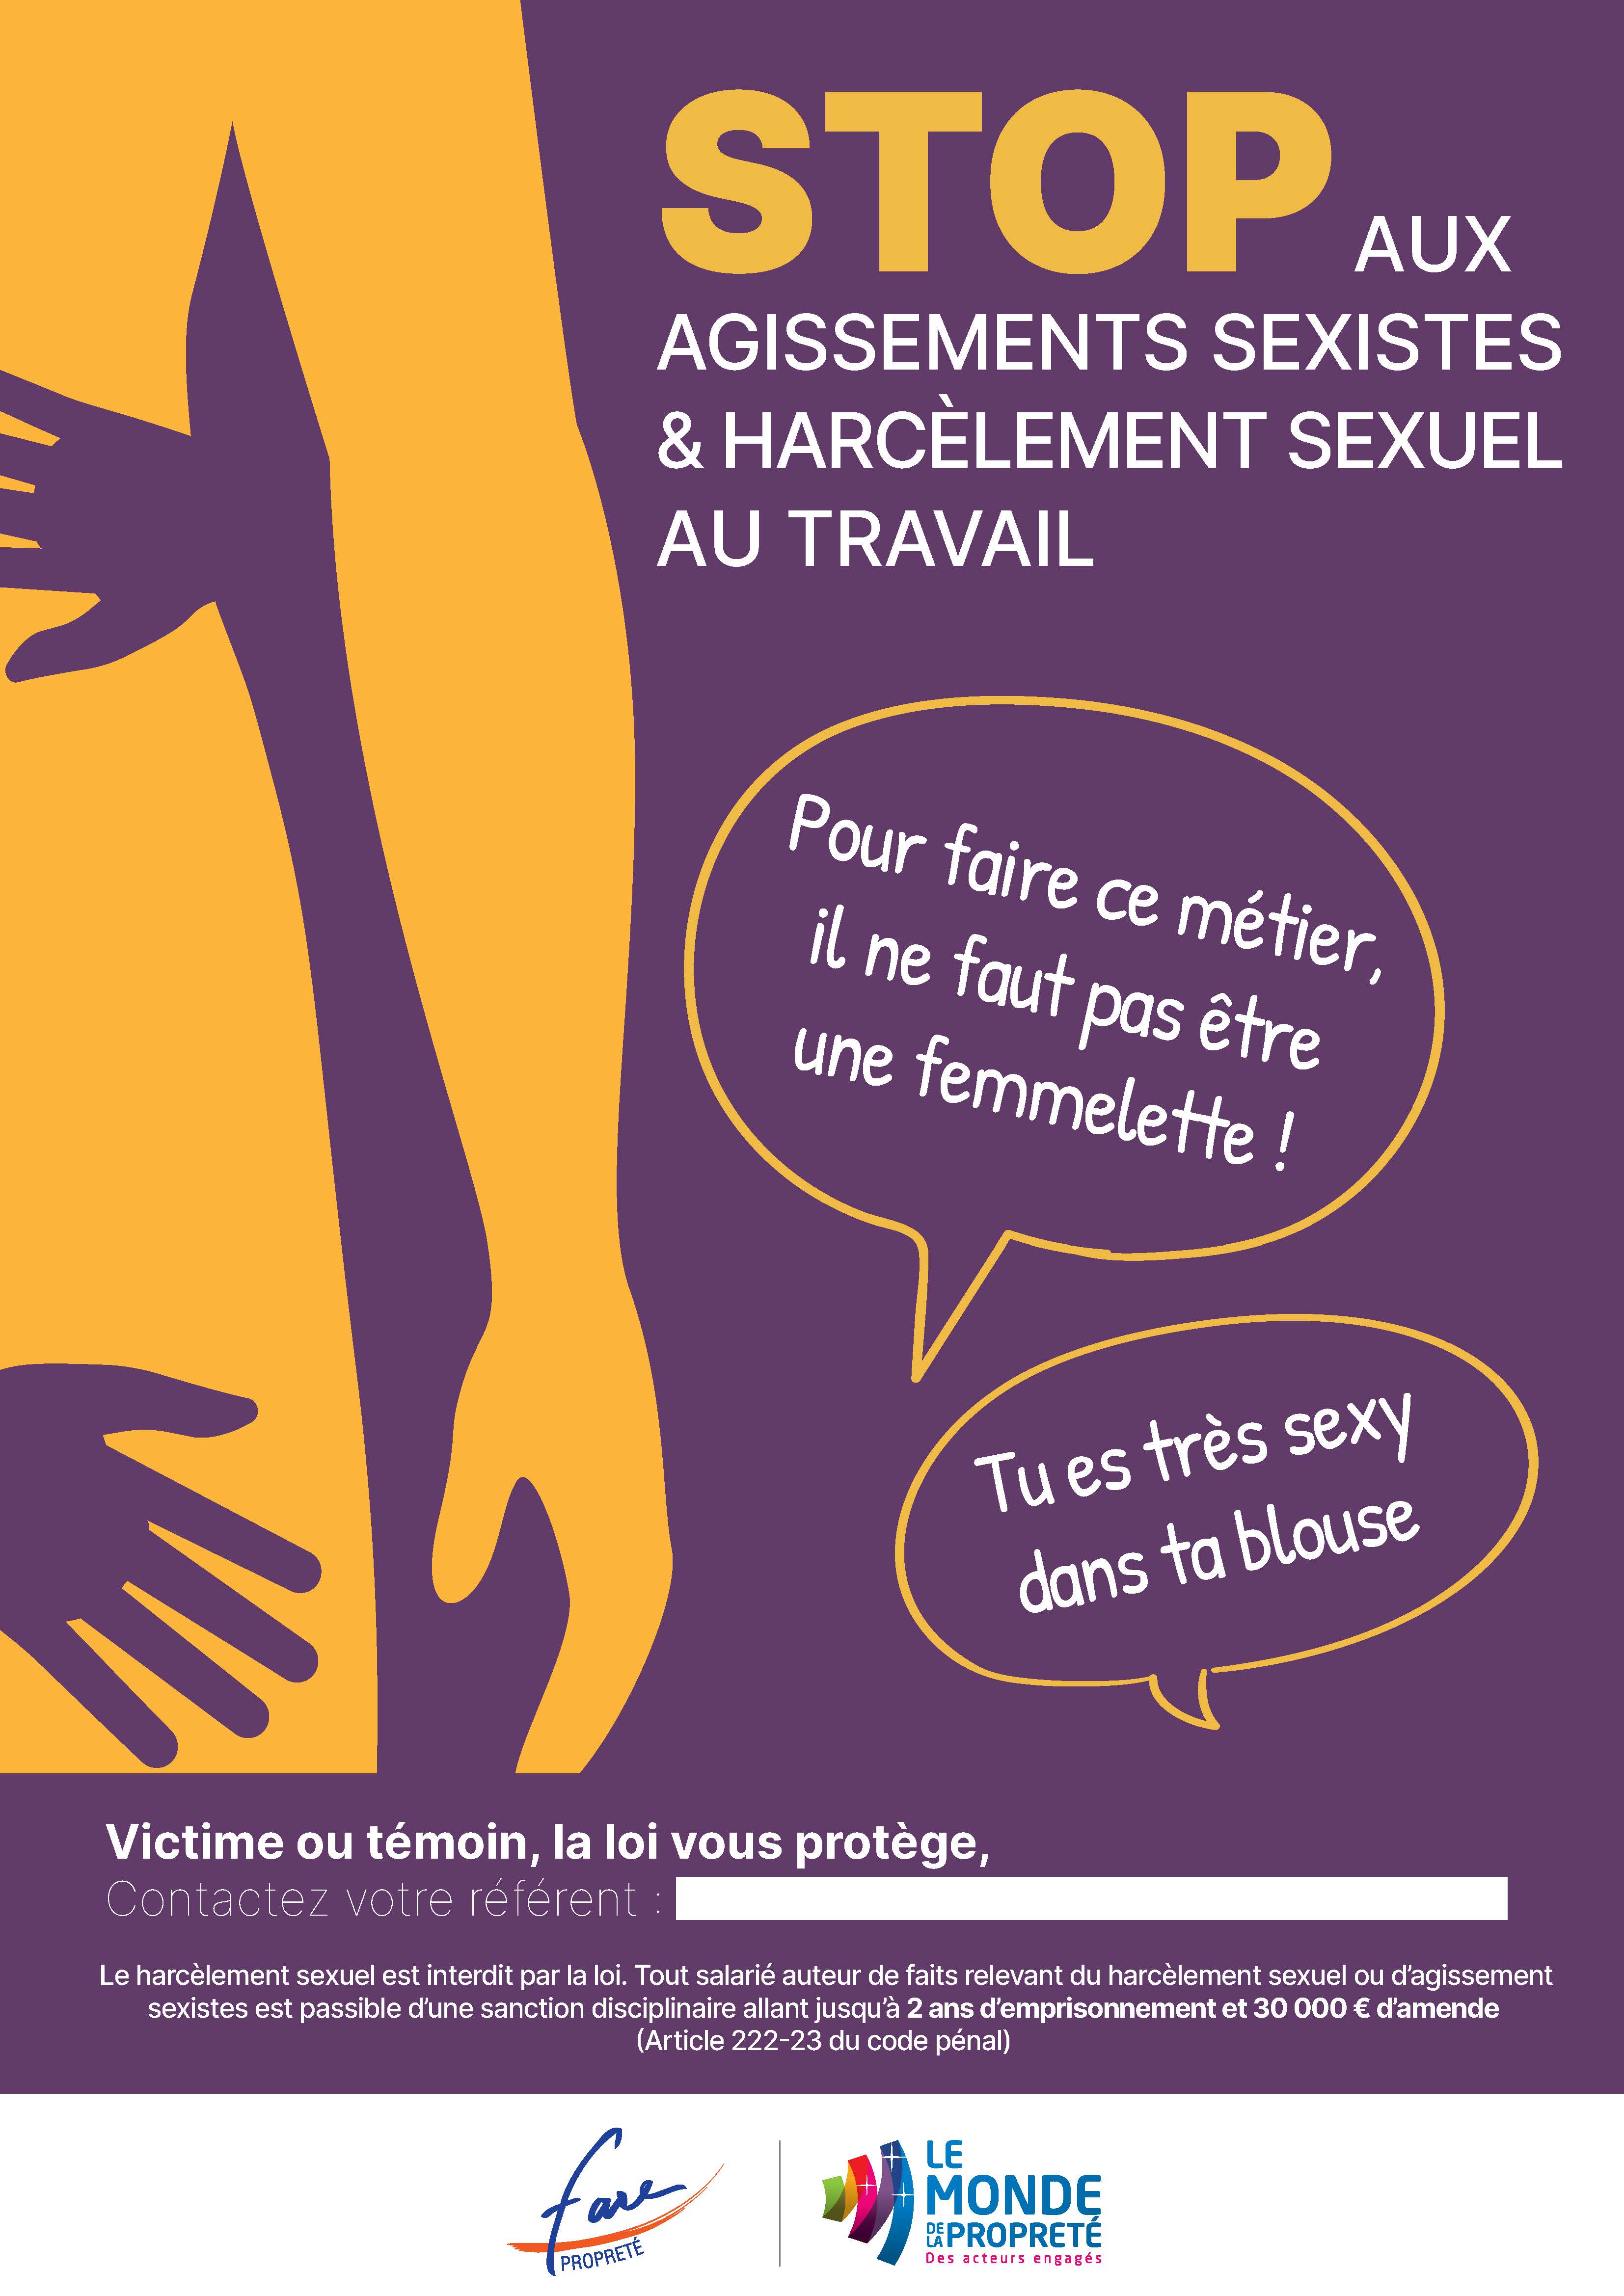 PANNEAU AFFICHAGE OBLIGATOIRE HARCELEMENT MORAL ET SEXUEL (A0520)